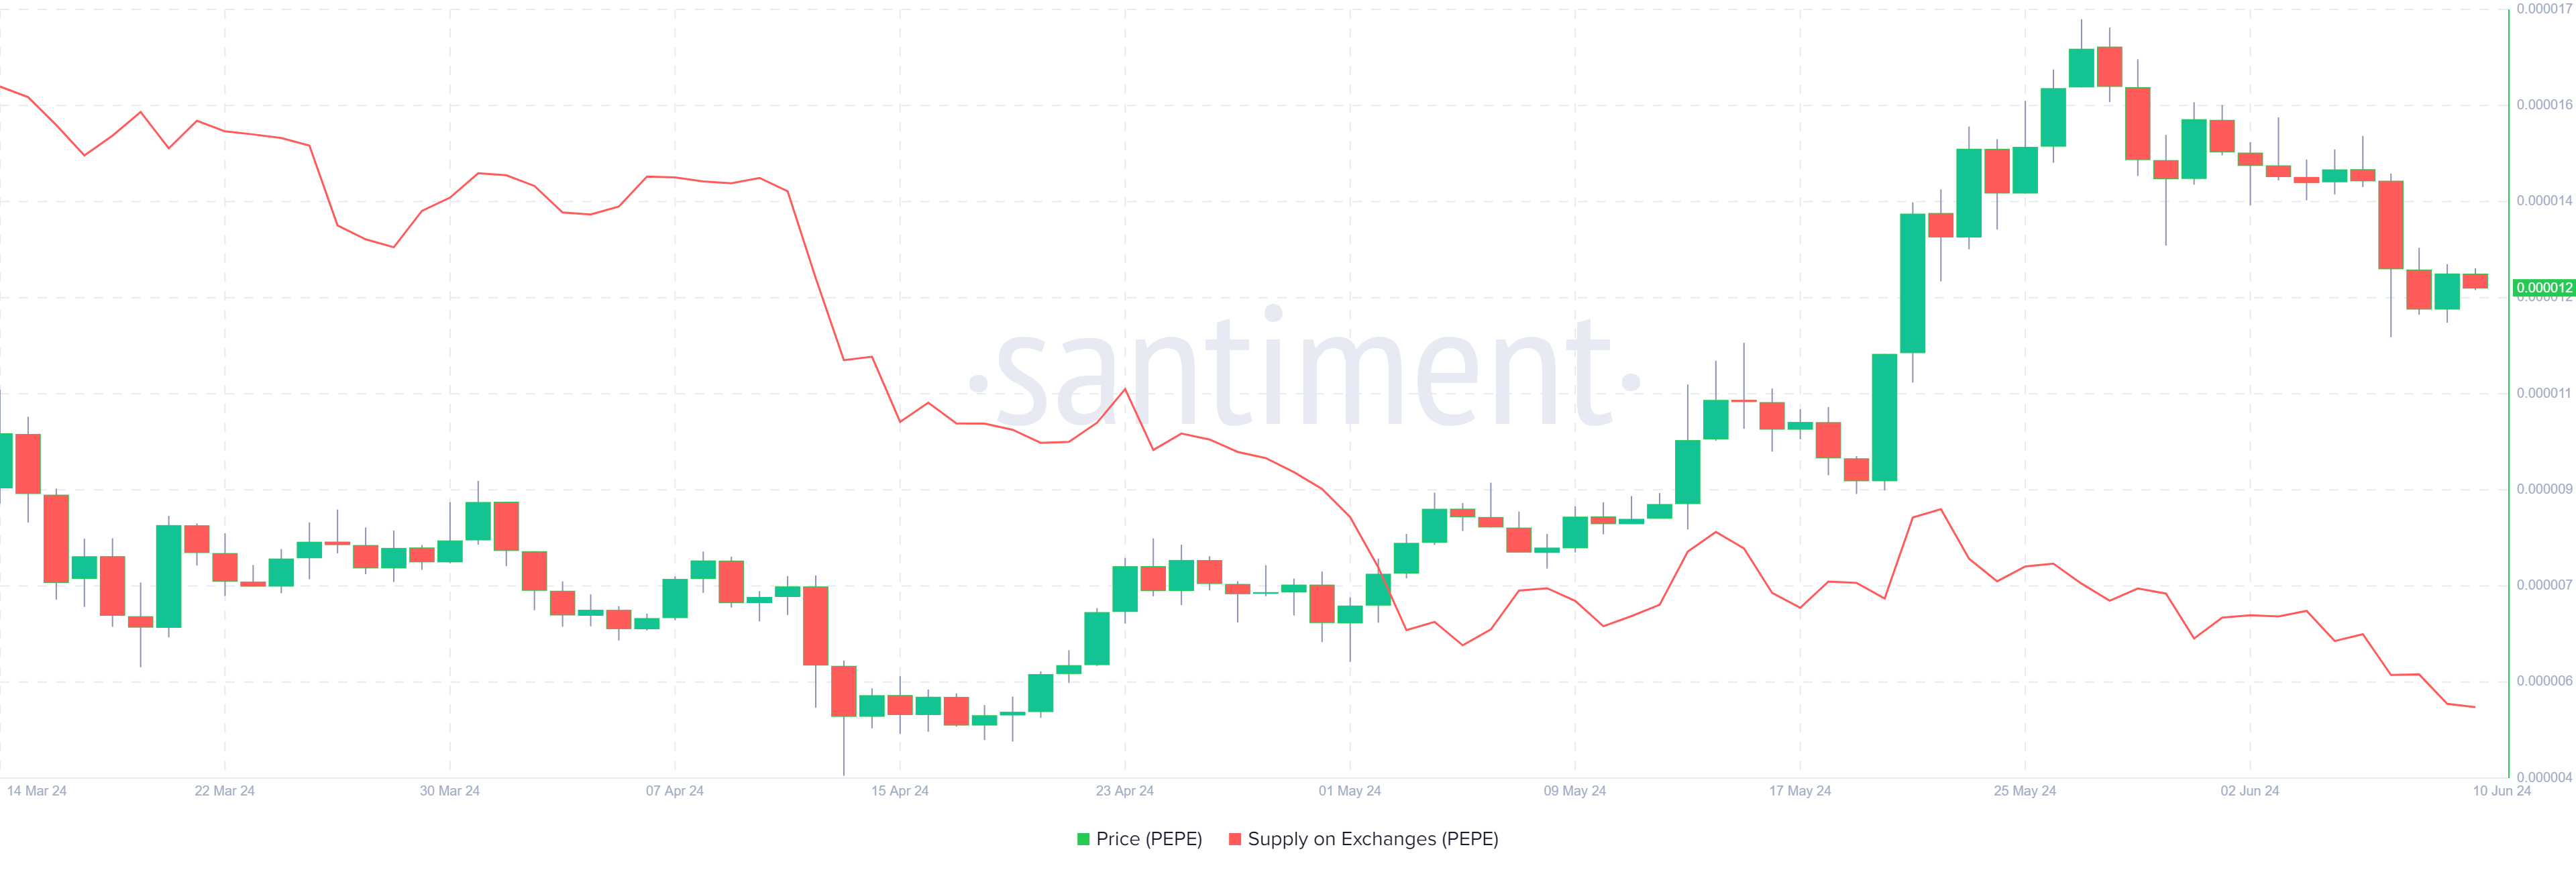 PEPE Supply on Exchange chart